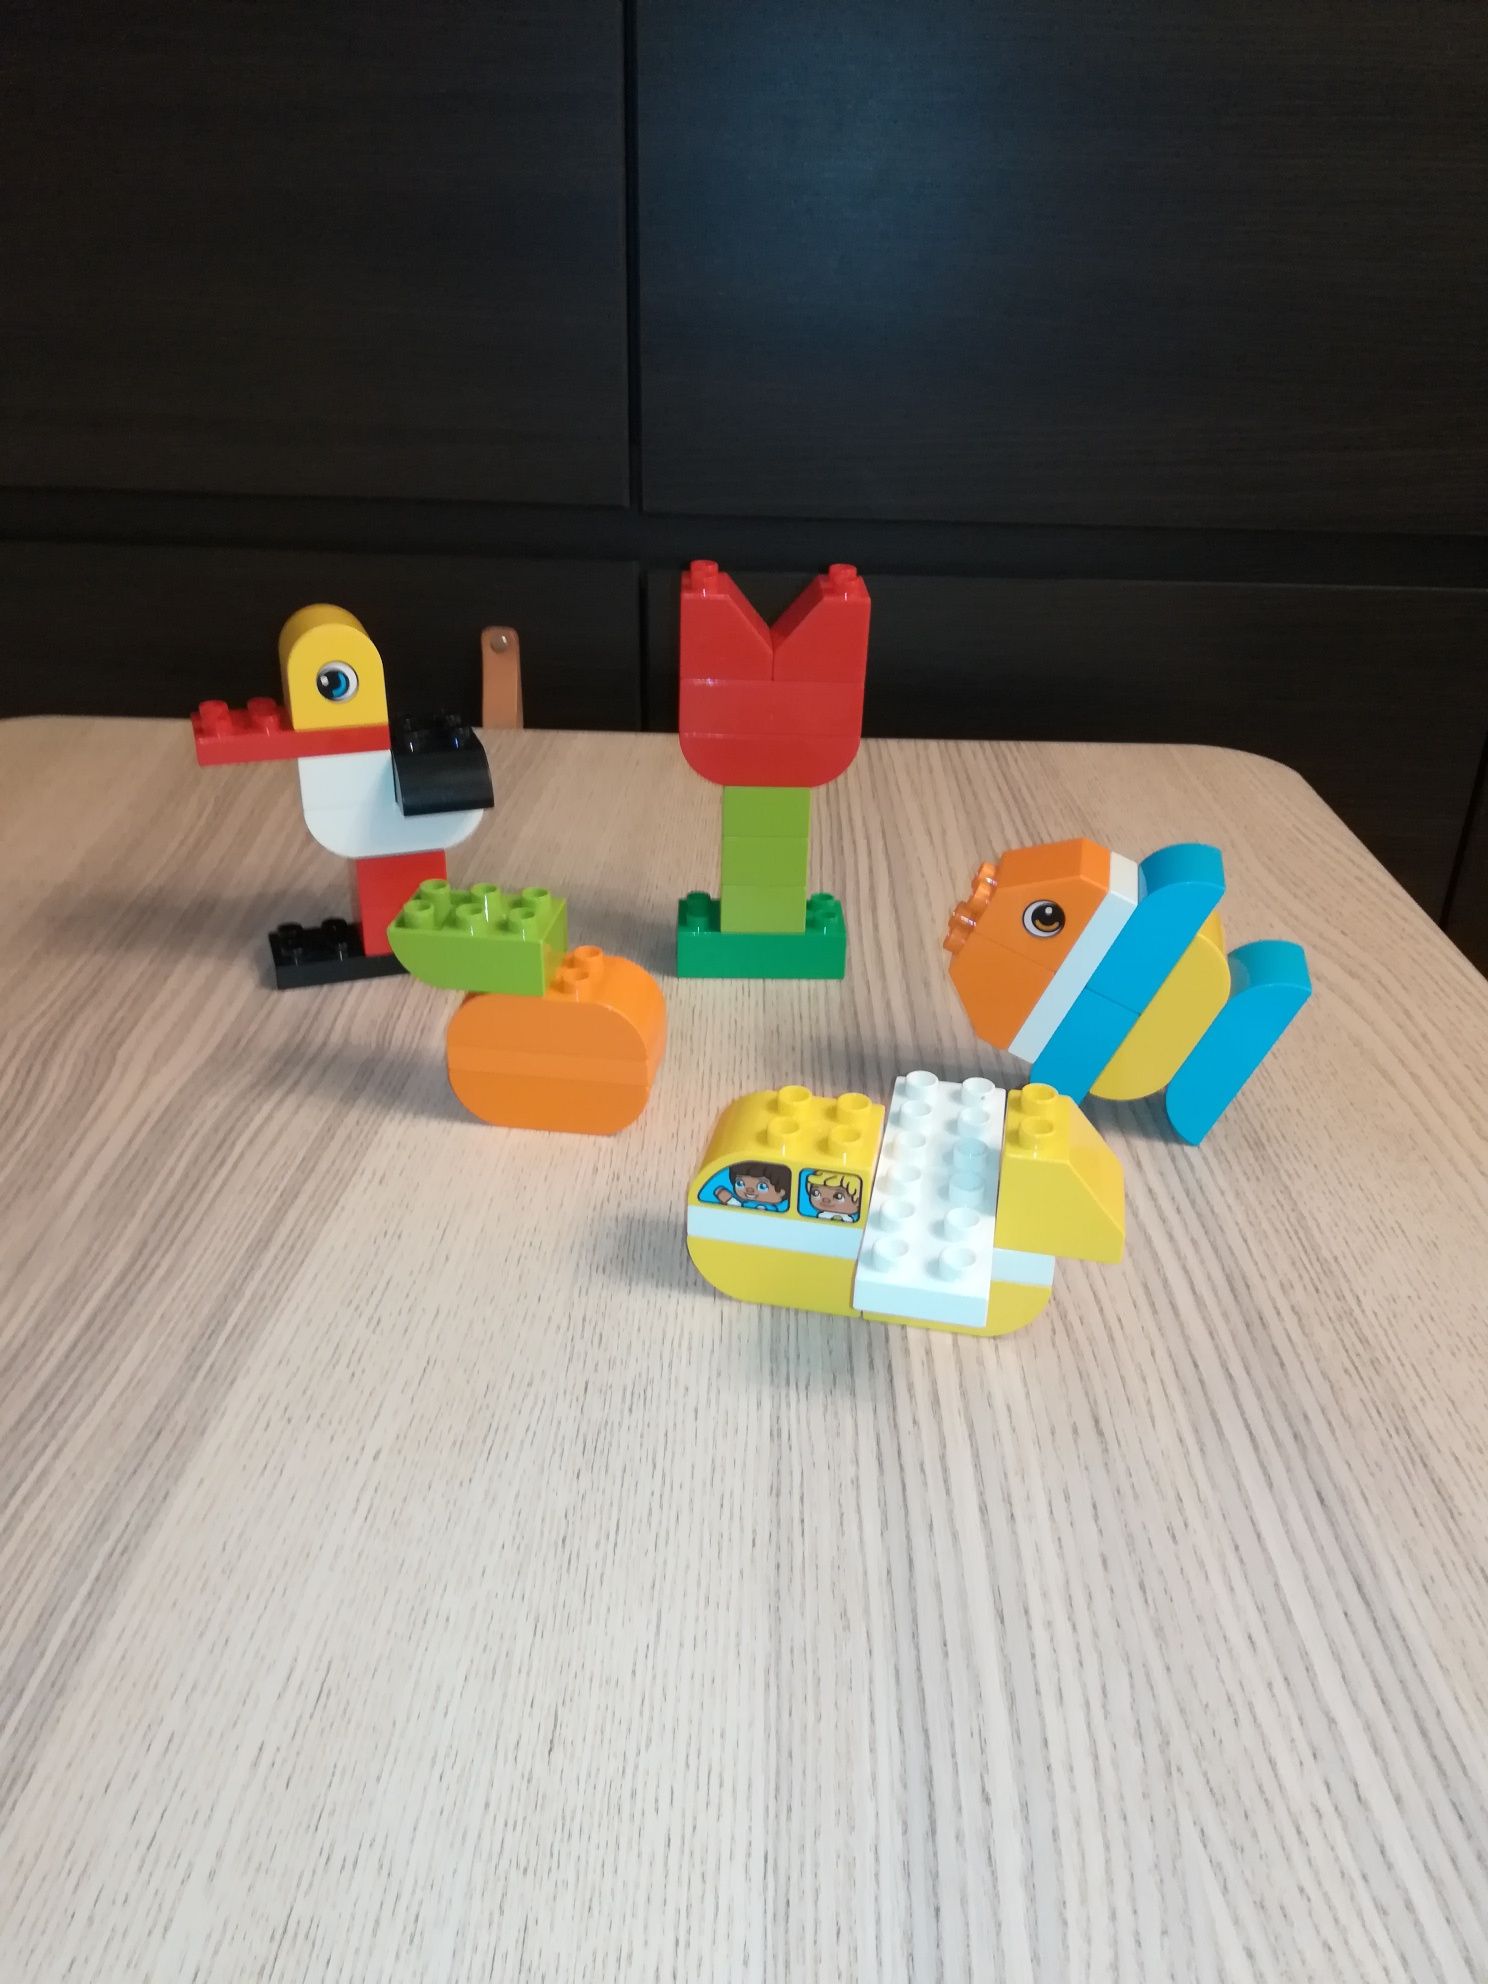 Klocki Lego Duplo 3 zestawy Creative dla dzieci.